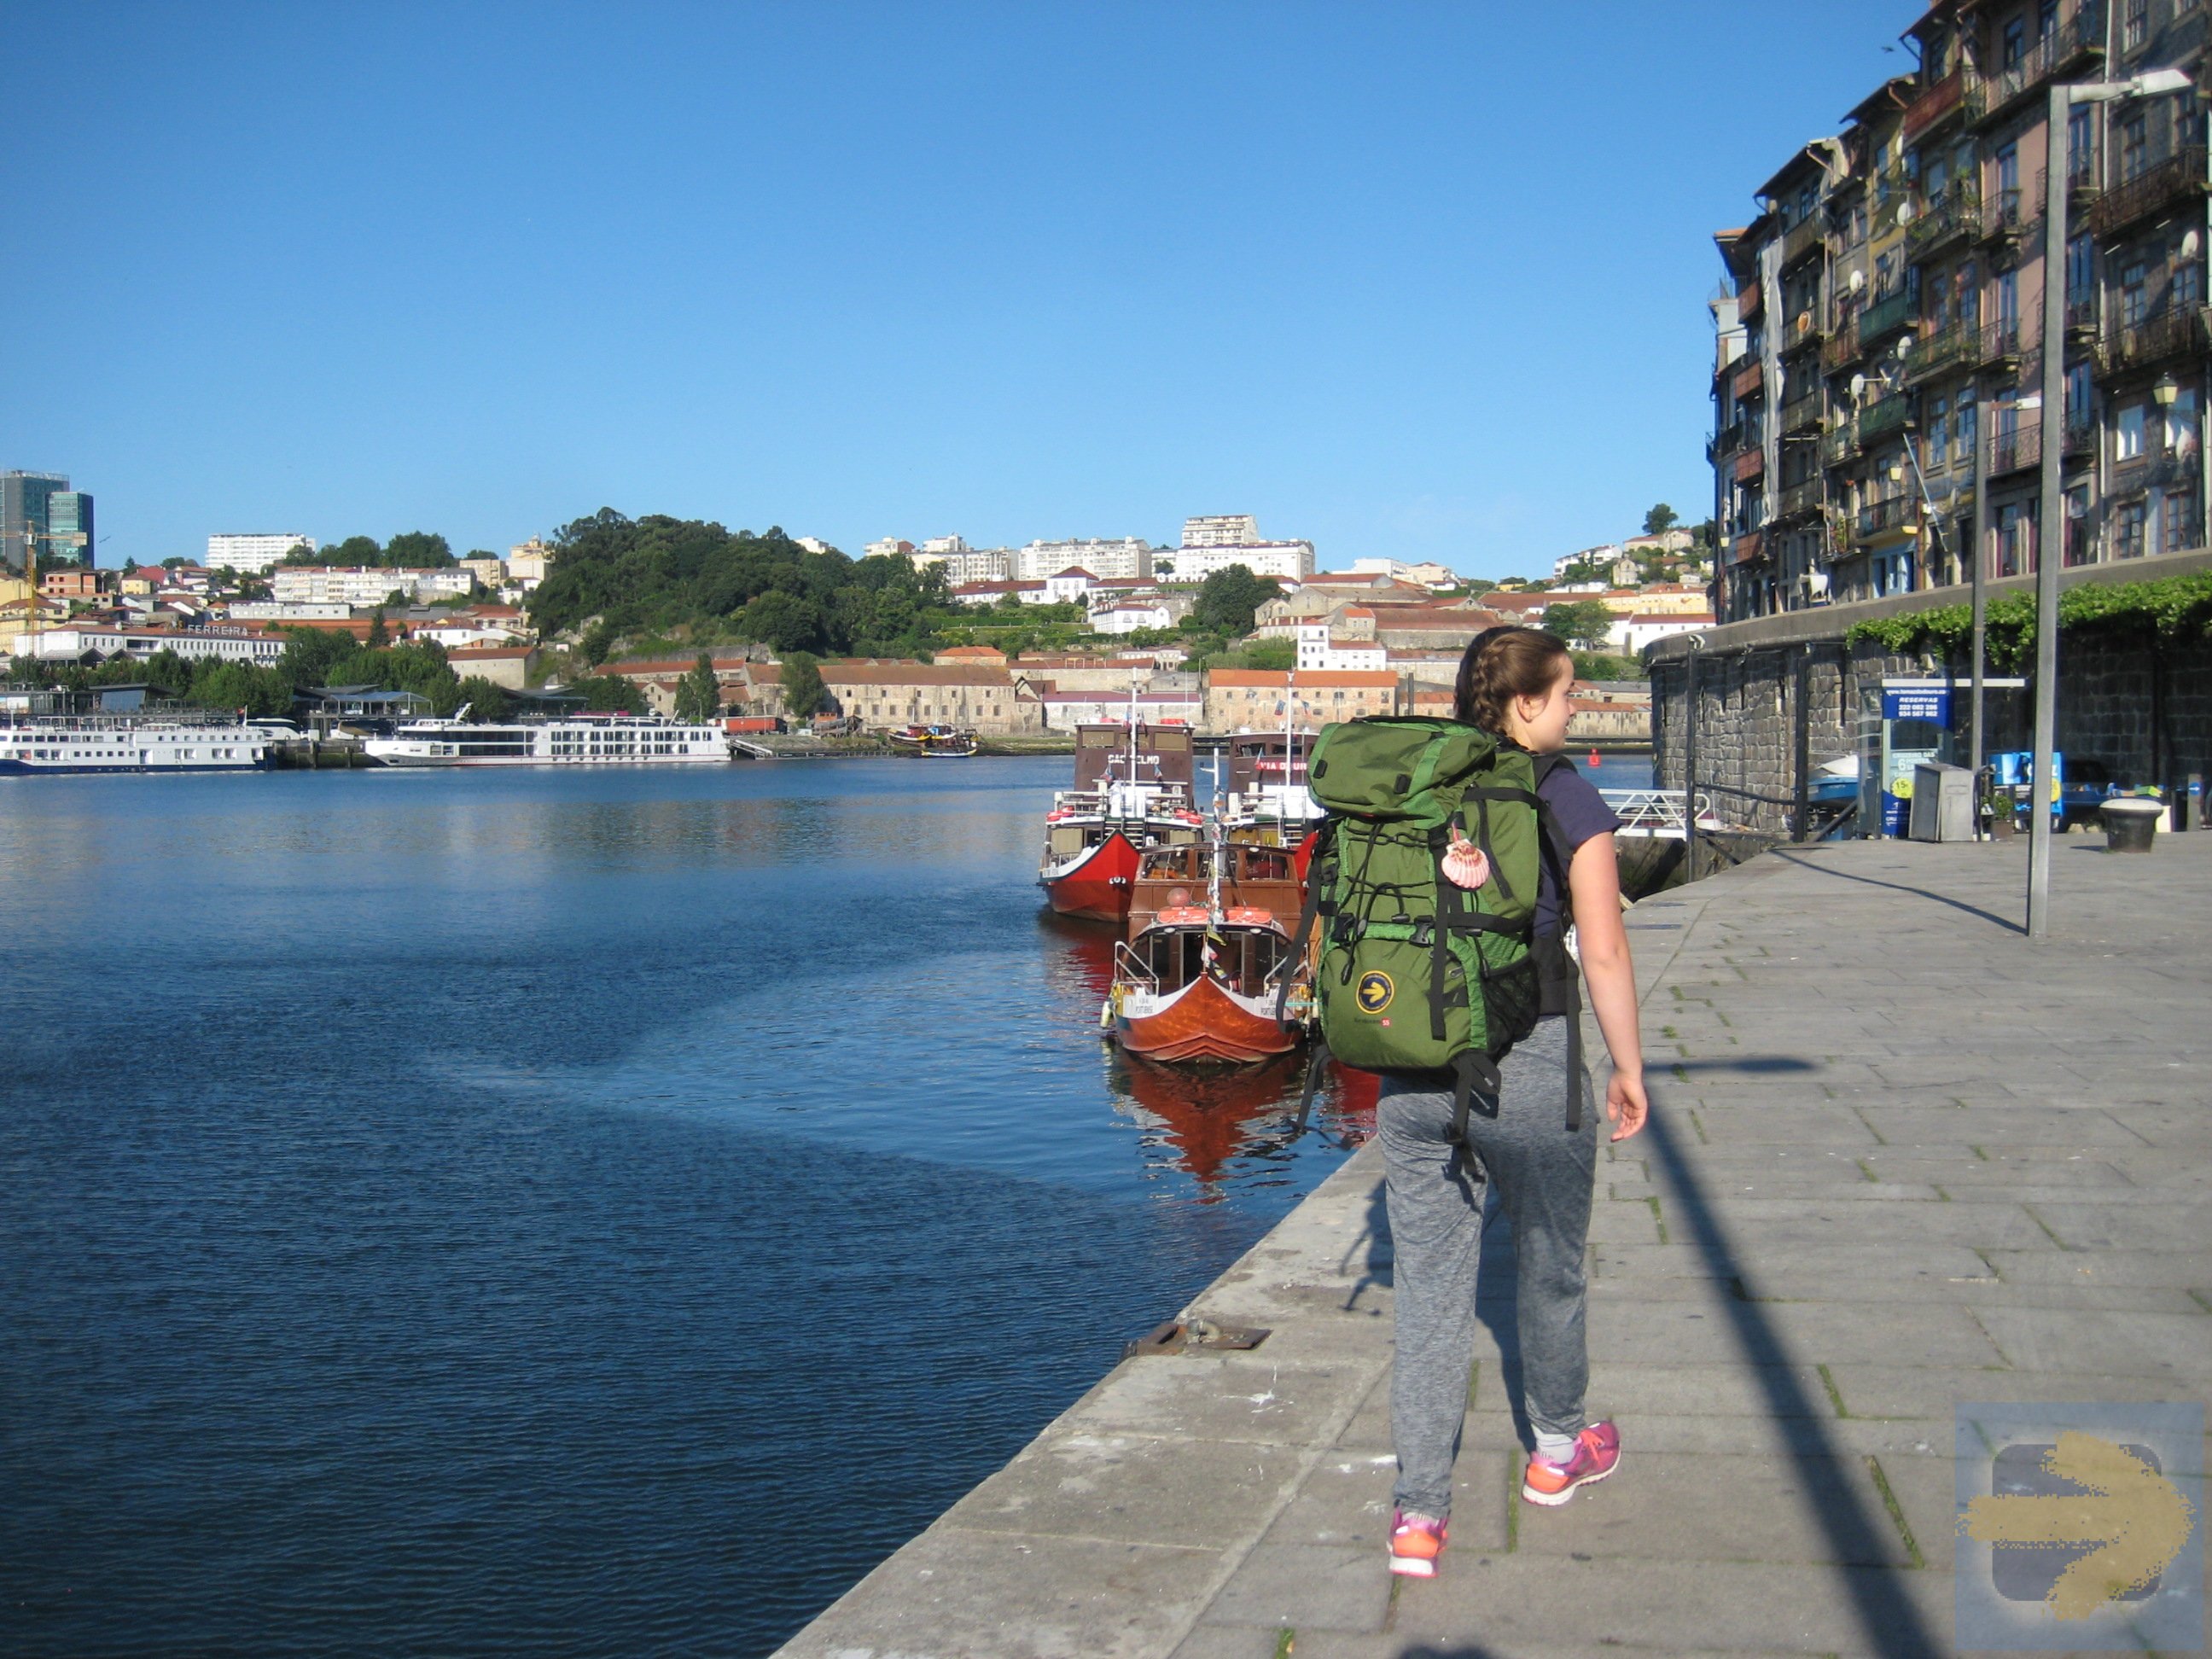 Leaving Porto